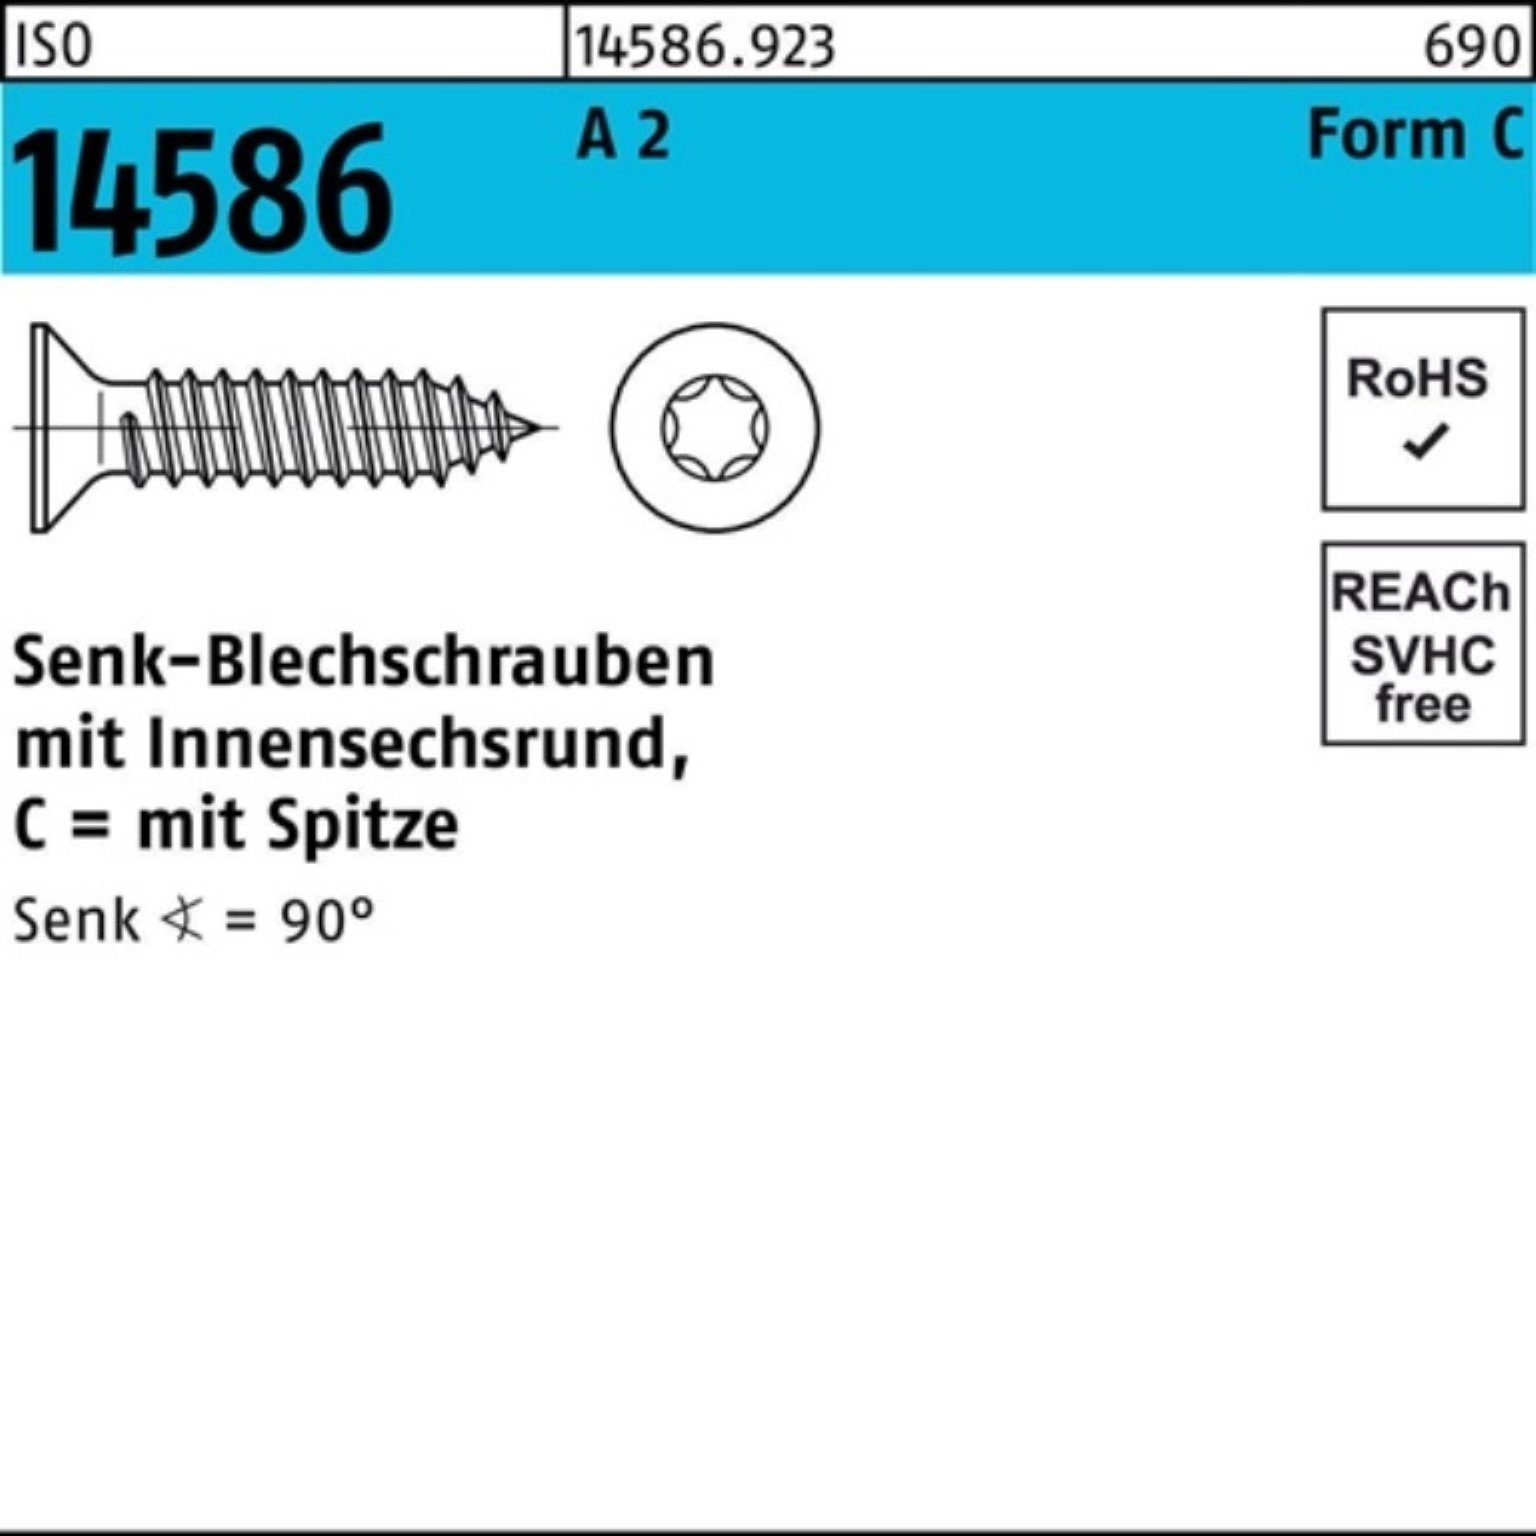 Reyher Schraube 5 19 ISR/Spitze Senkblechschraube Pack 5,5x 2 ISO 500er T25 -C 14586 A